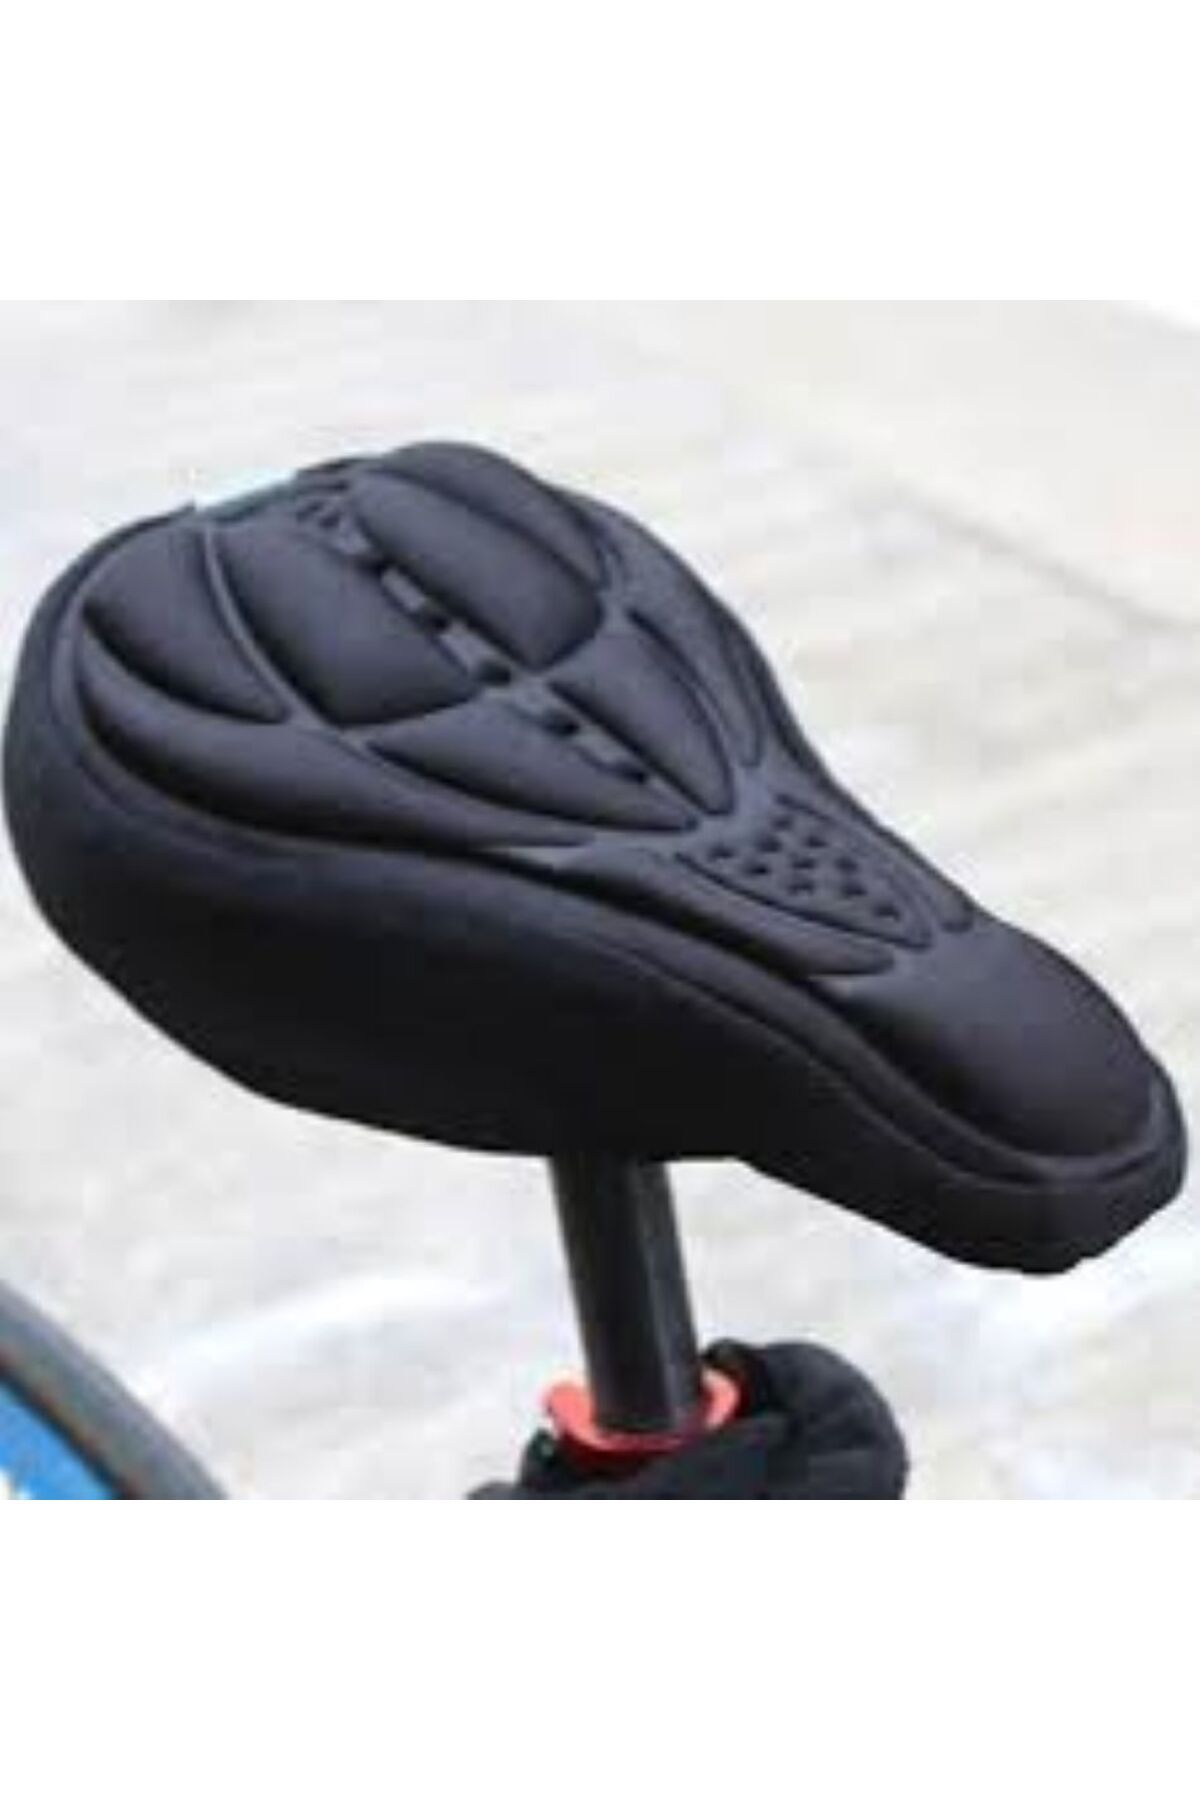 Asroya Siyah Sünger Bisiklet Sele Kılıfı Ortopedik Koltuk Kılıfı 3d Reflektör